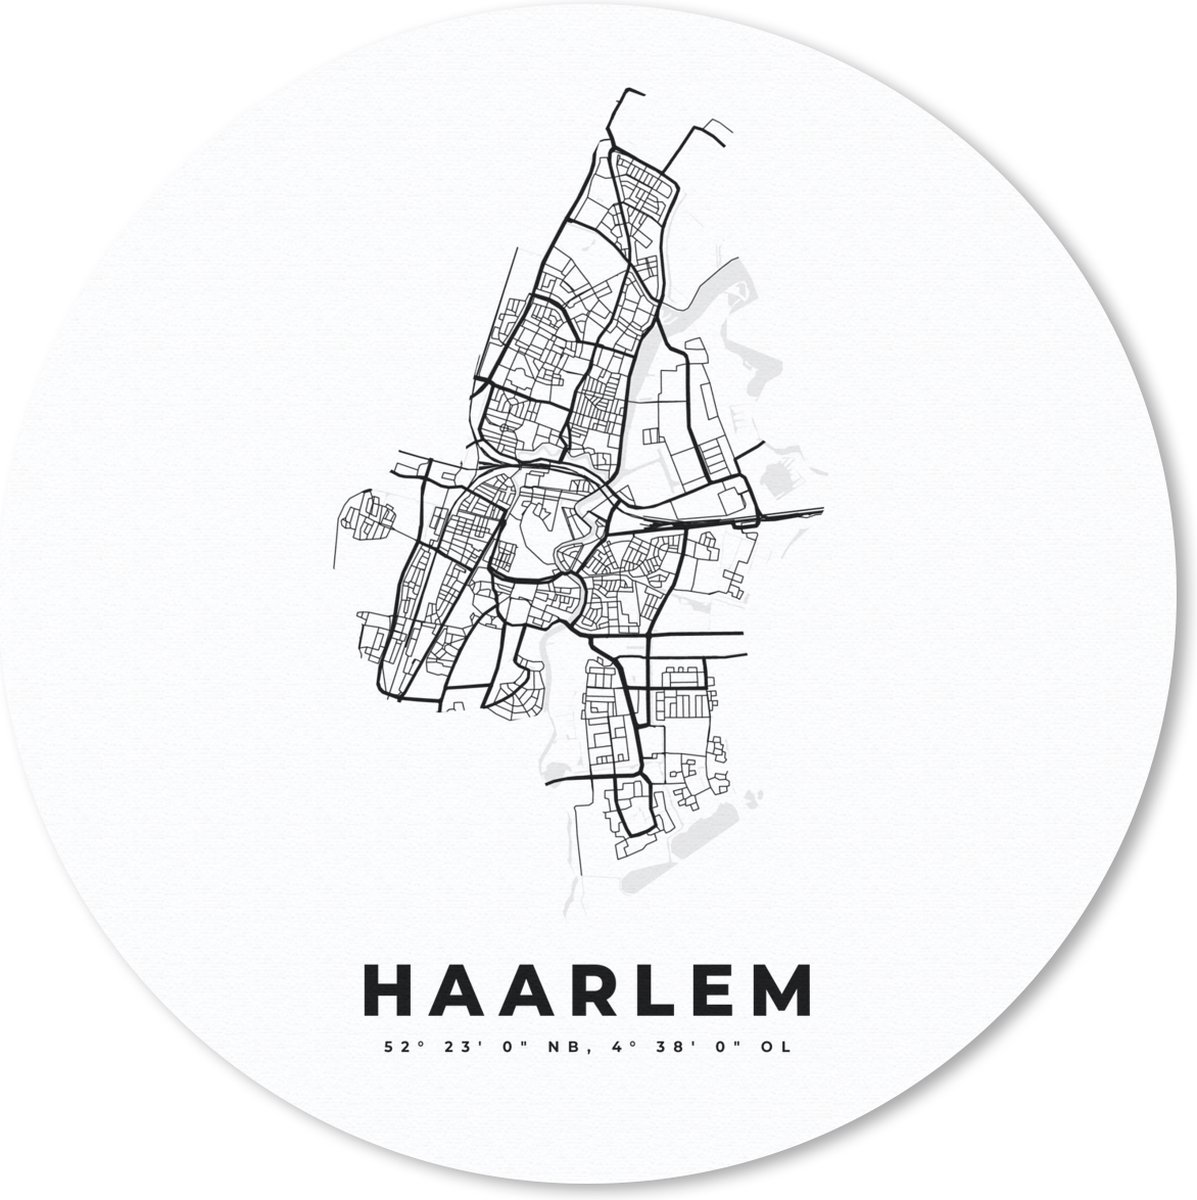 Muismat - Mousepad - Rond - Nederland – Haarlem – Stadskaart – Kaart – Zwart Wit – Plattegrond - 40x40 cm - Ronde muismat